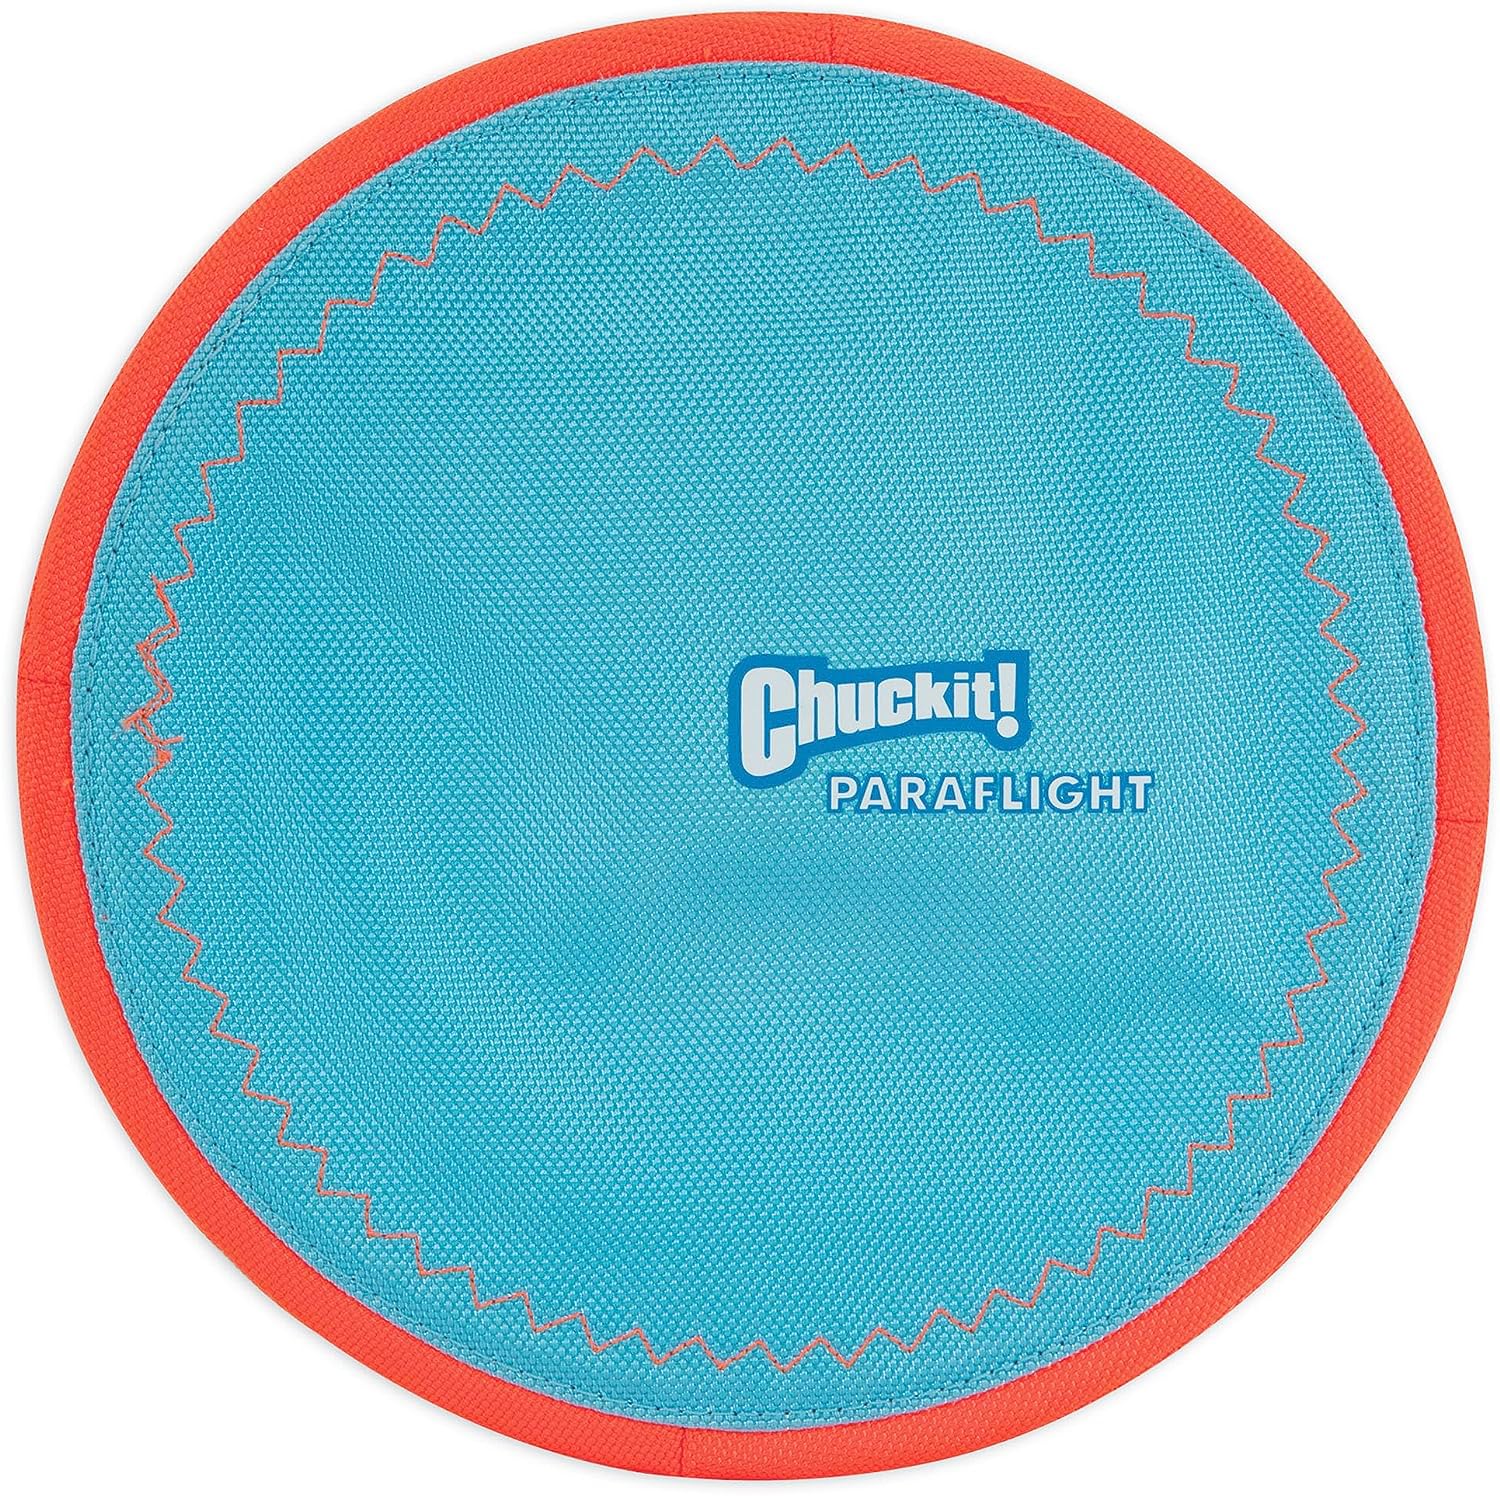 ChuckIt! Paraflight Flying Disc Dog Toy, Large (9.75"), Orange And Blue - $3.79